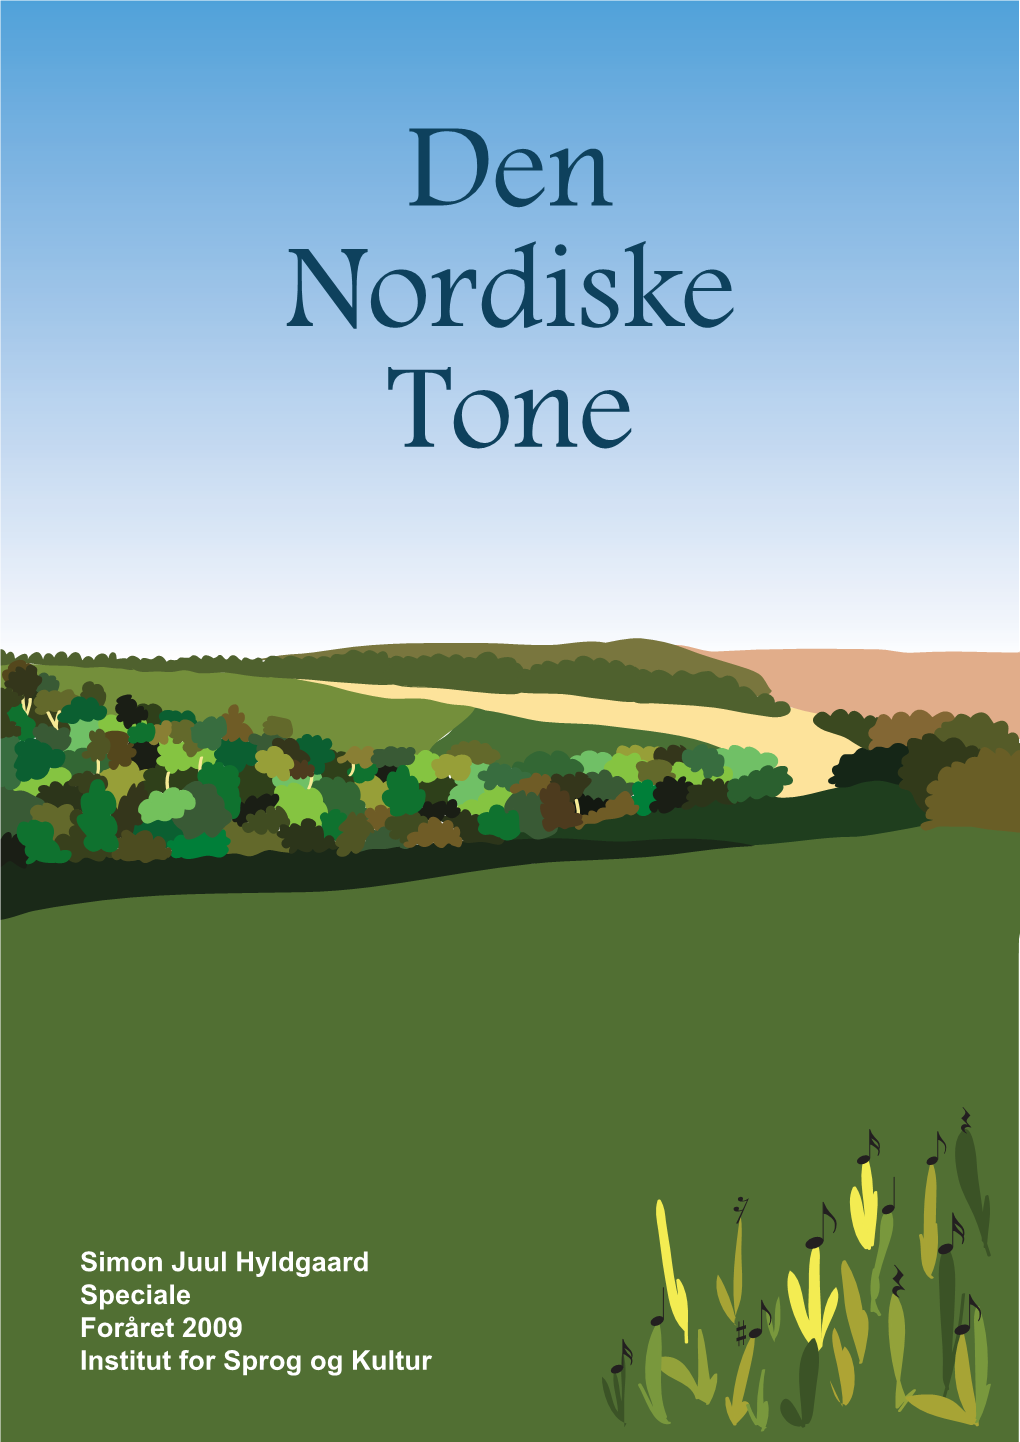 Den Nordiske Tone